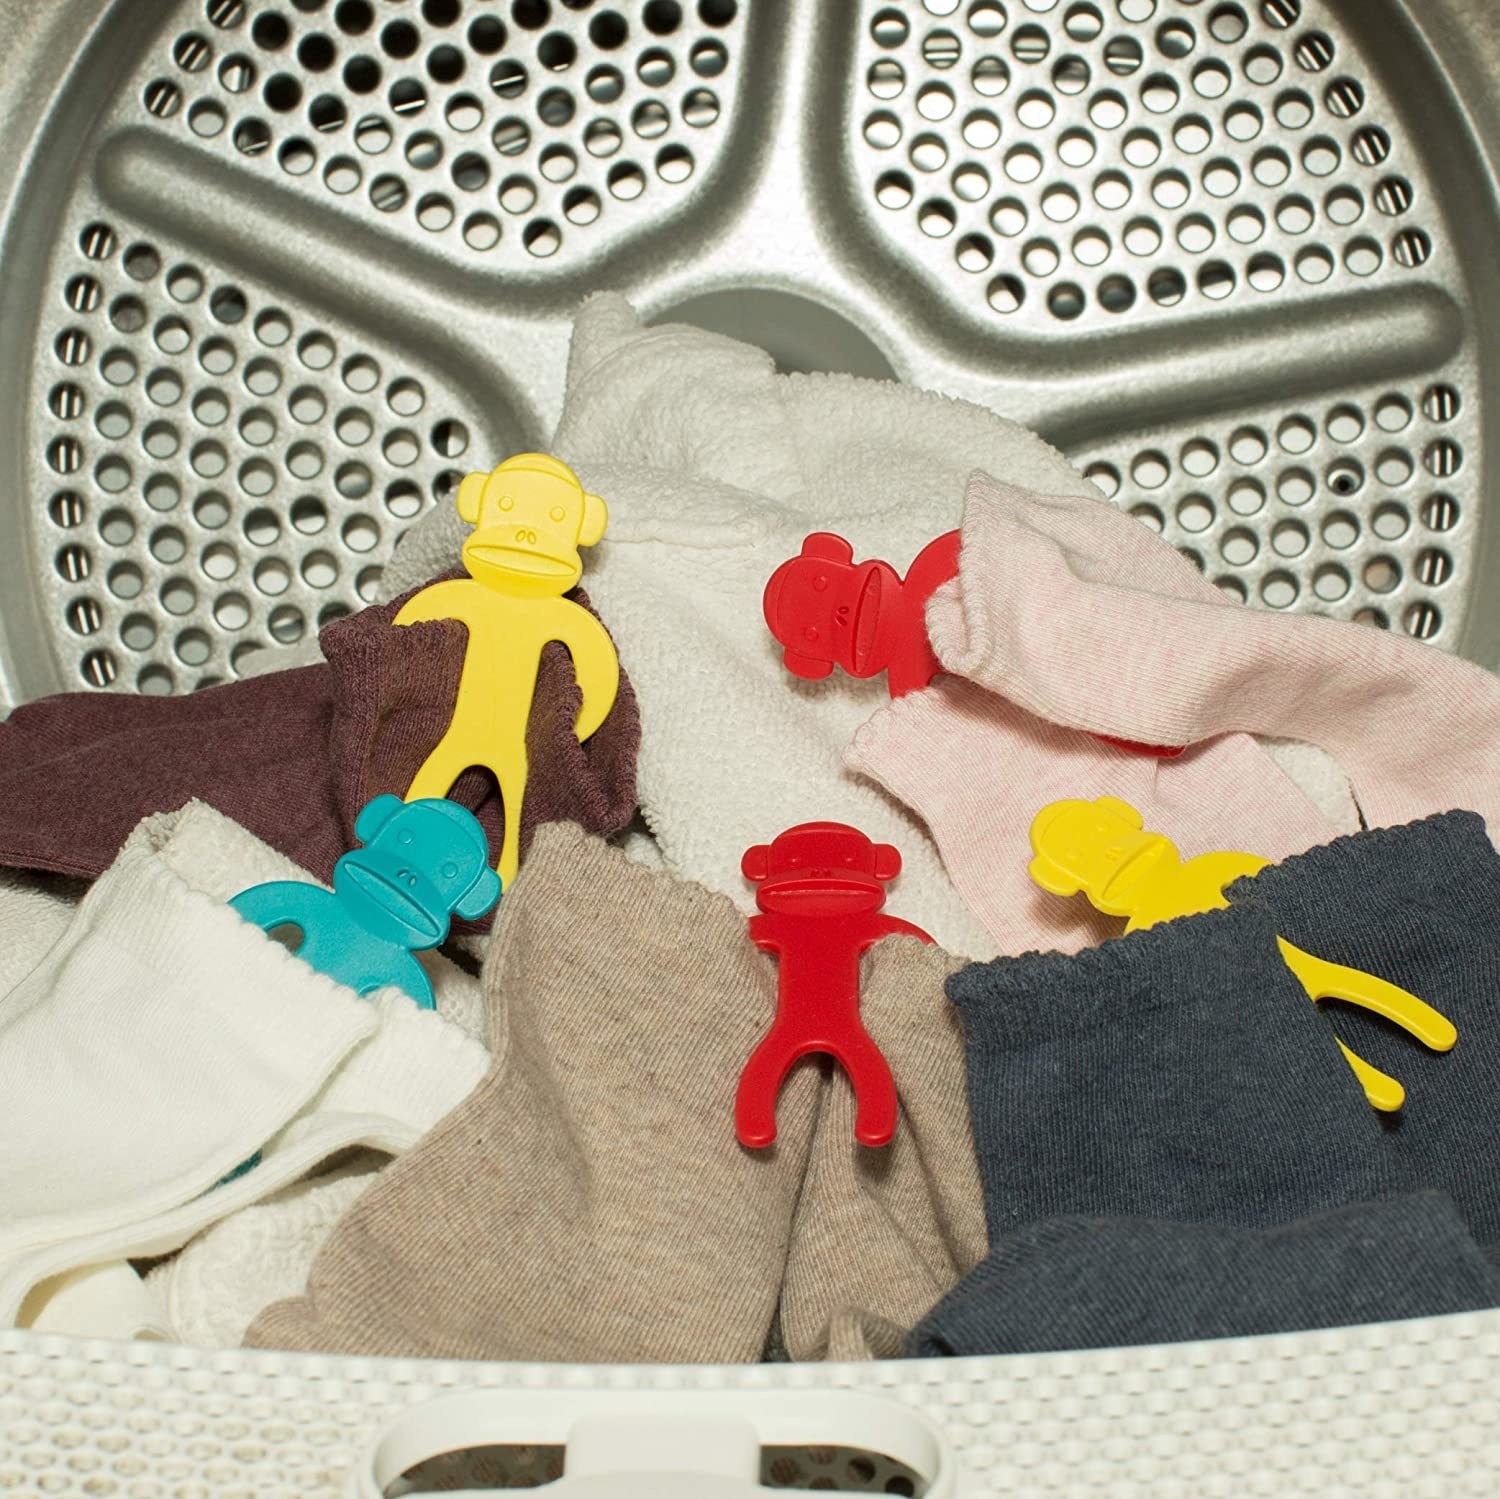 Several sock monkeys in a dryer